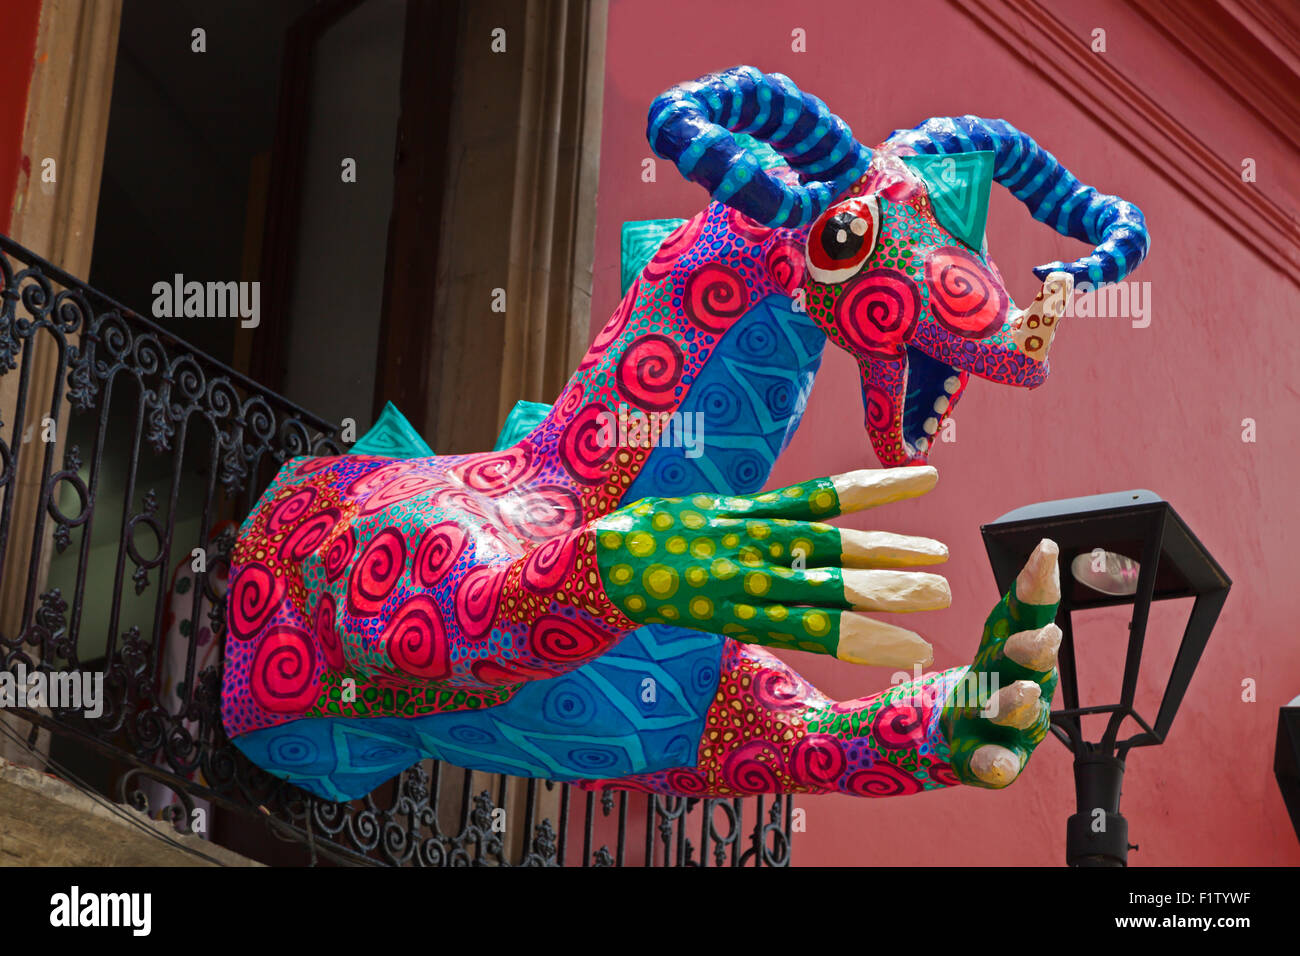 Figuras de papel mache animales de fantasía como arte en la calle - OAXACA, MÉXICO Foto de stock